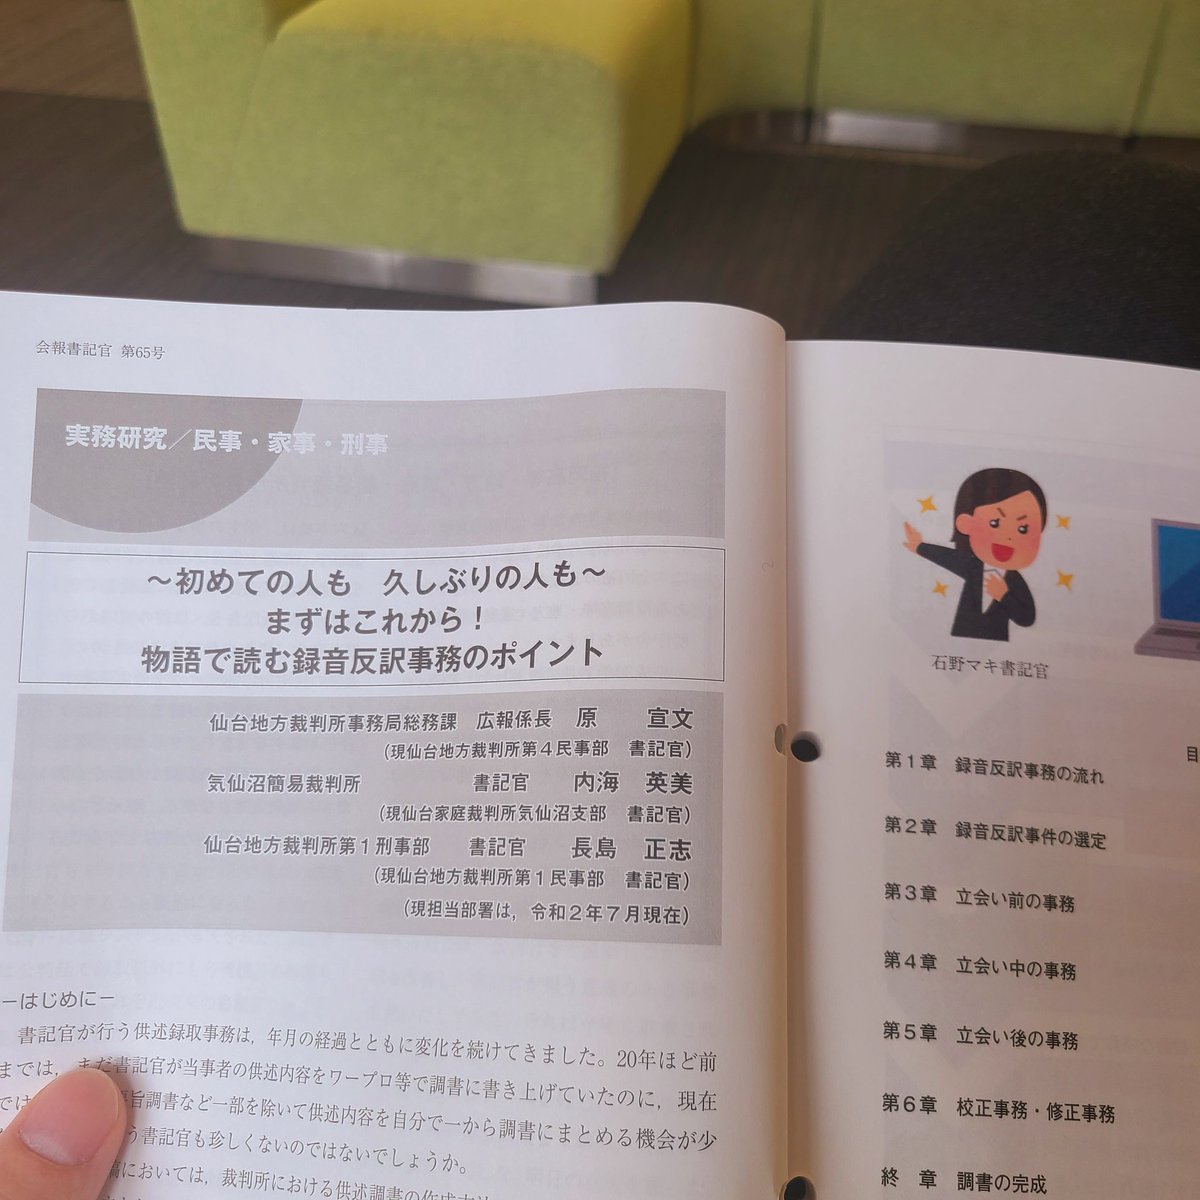 竹内亮 図書館の雑誌に出ていた 物語で読む録音反訳事務のポイント を読む いらすとやさんのイラストが使われている